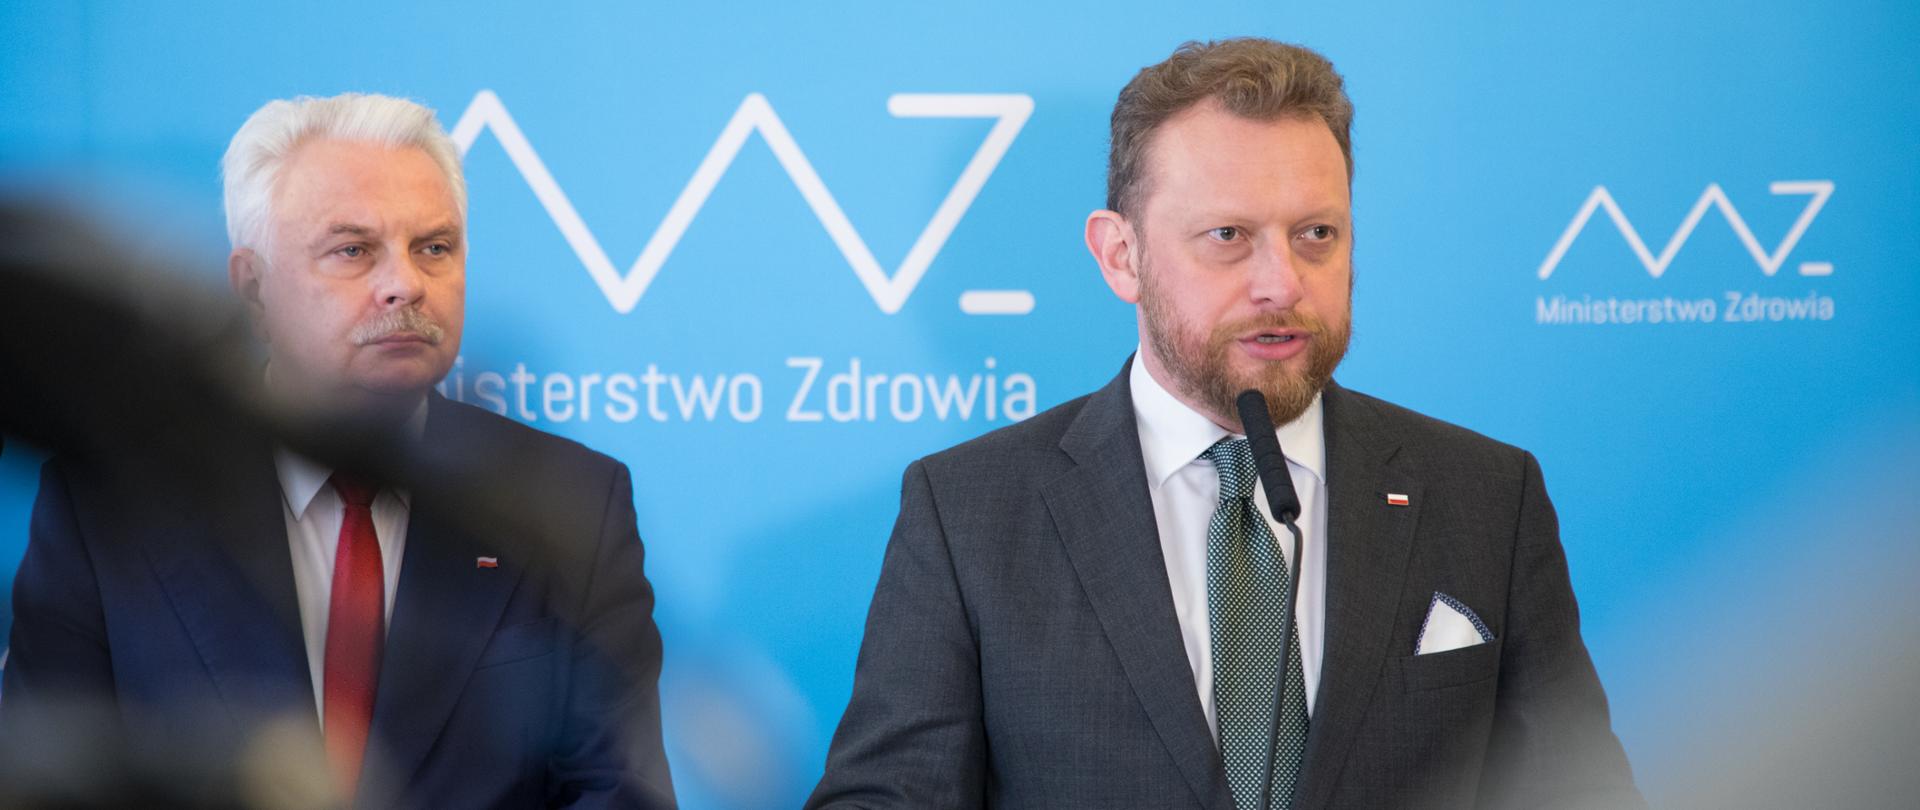 Minister Łukasz Szumowski oraz wiceminister Waldemar Kraska podczas konferencji prasowej. 